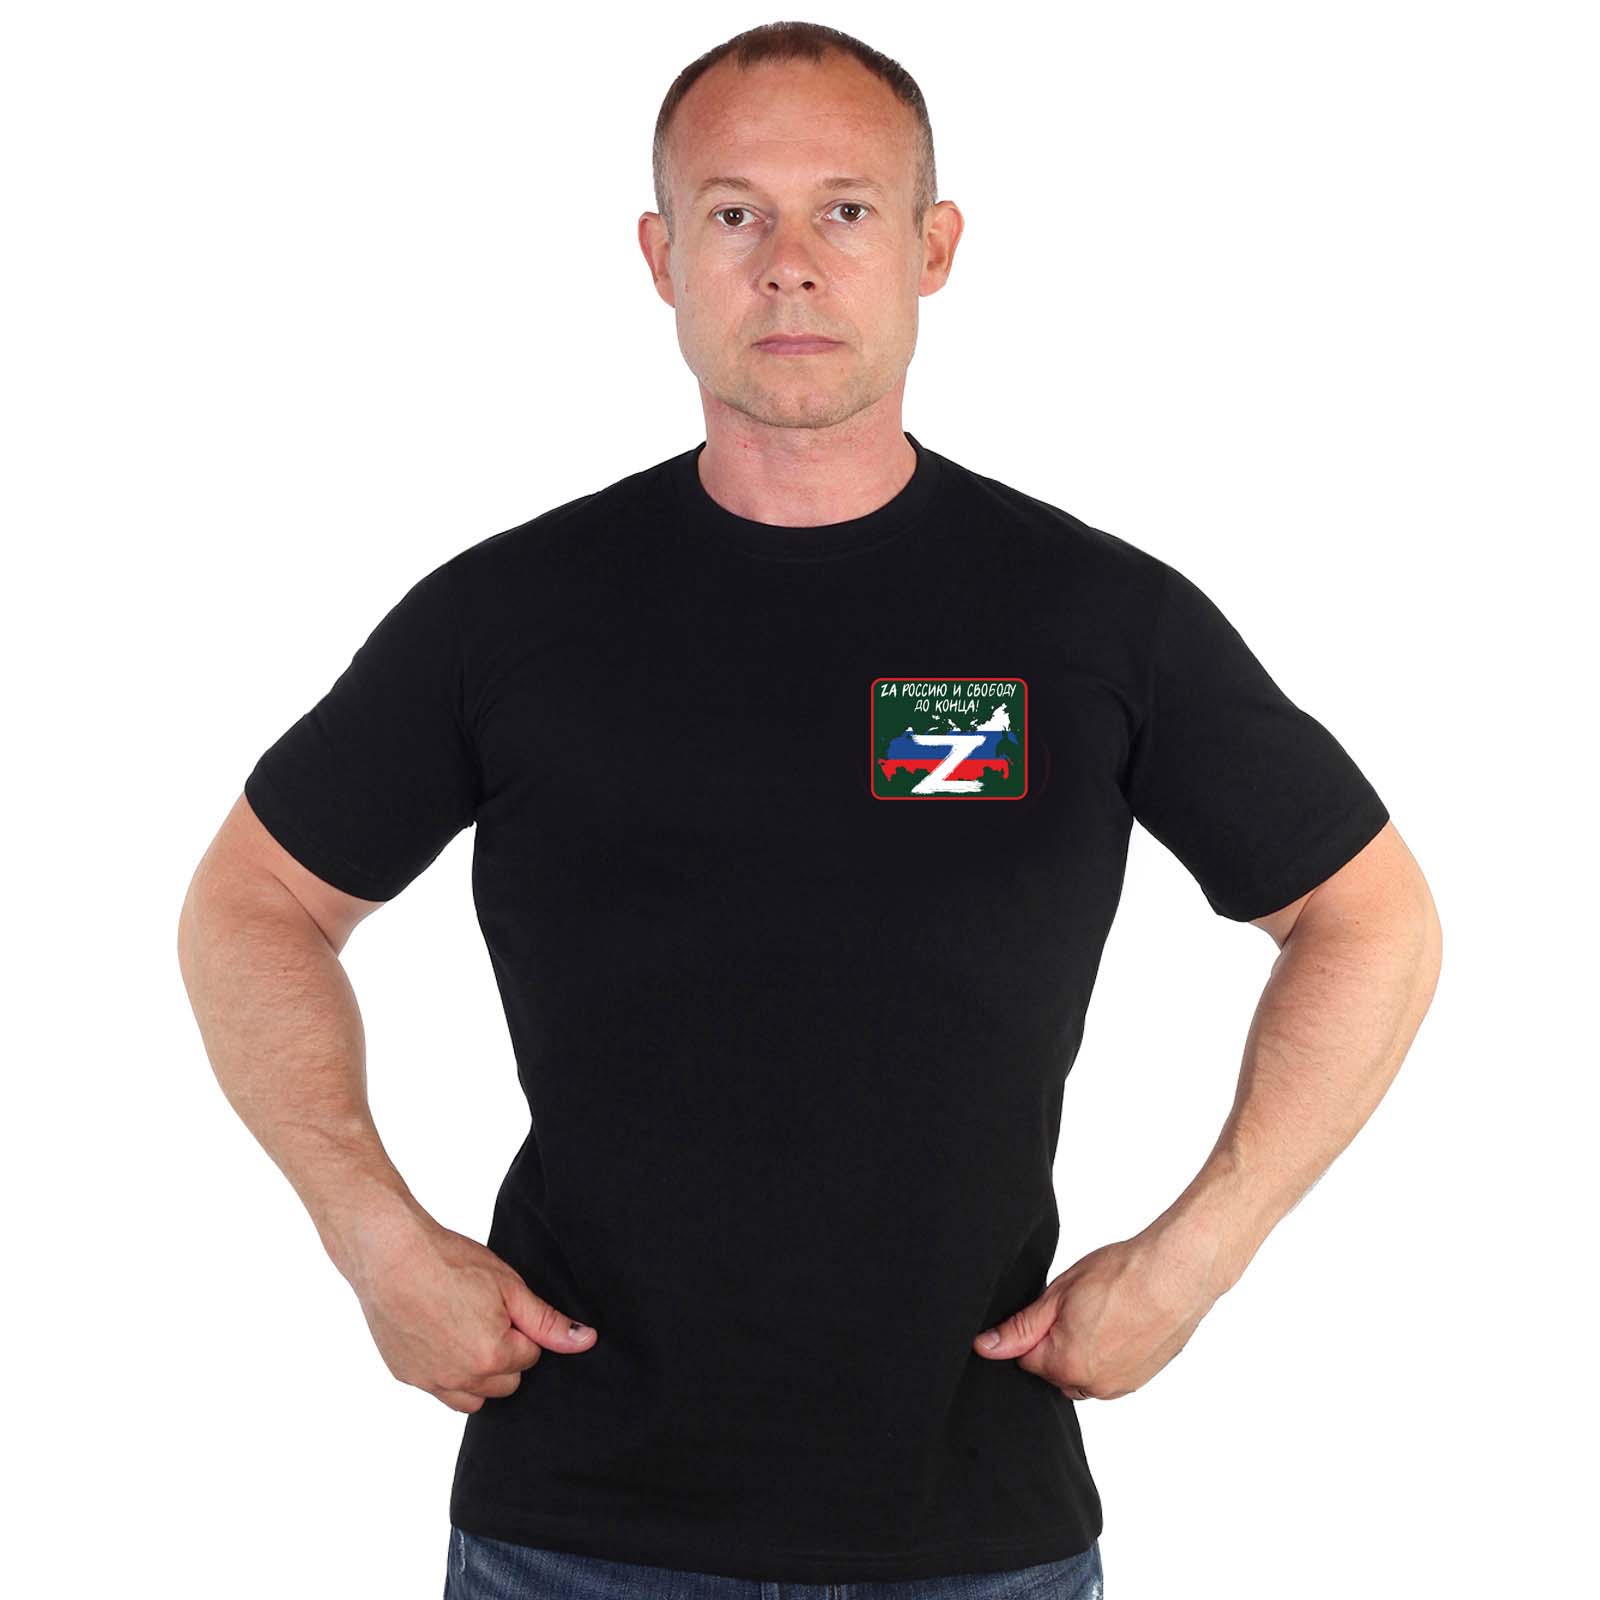 Купить черную оригинальную футболку с термотрансфером Zа Россию и свободу до конца онлайн